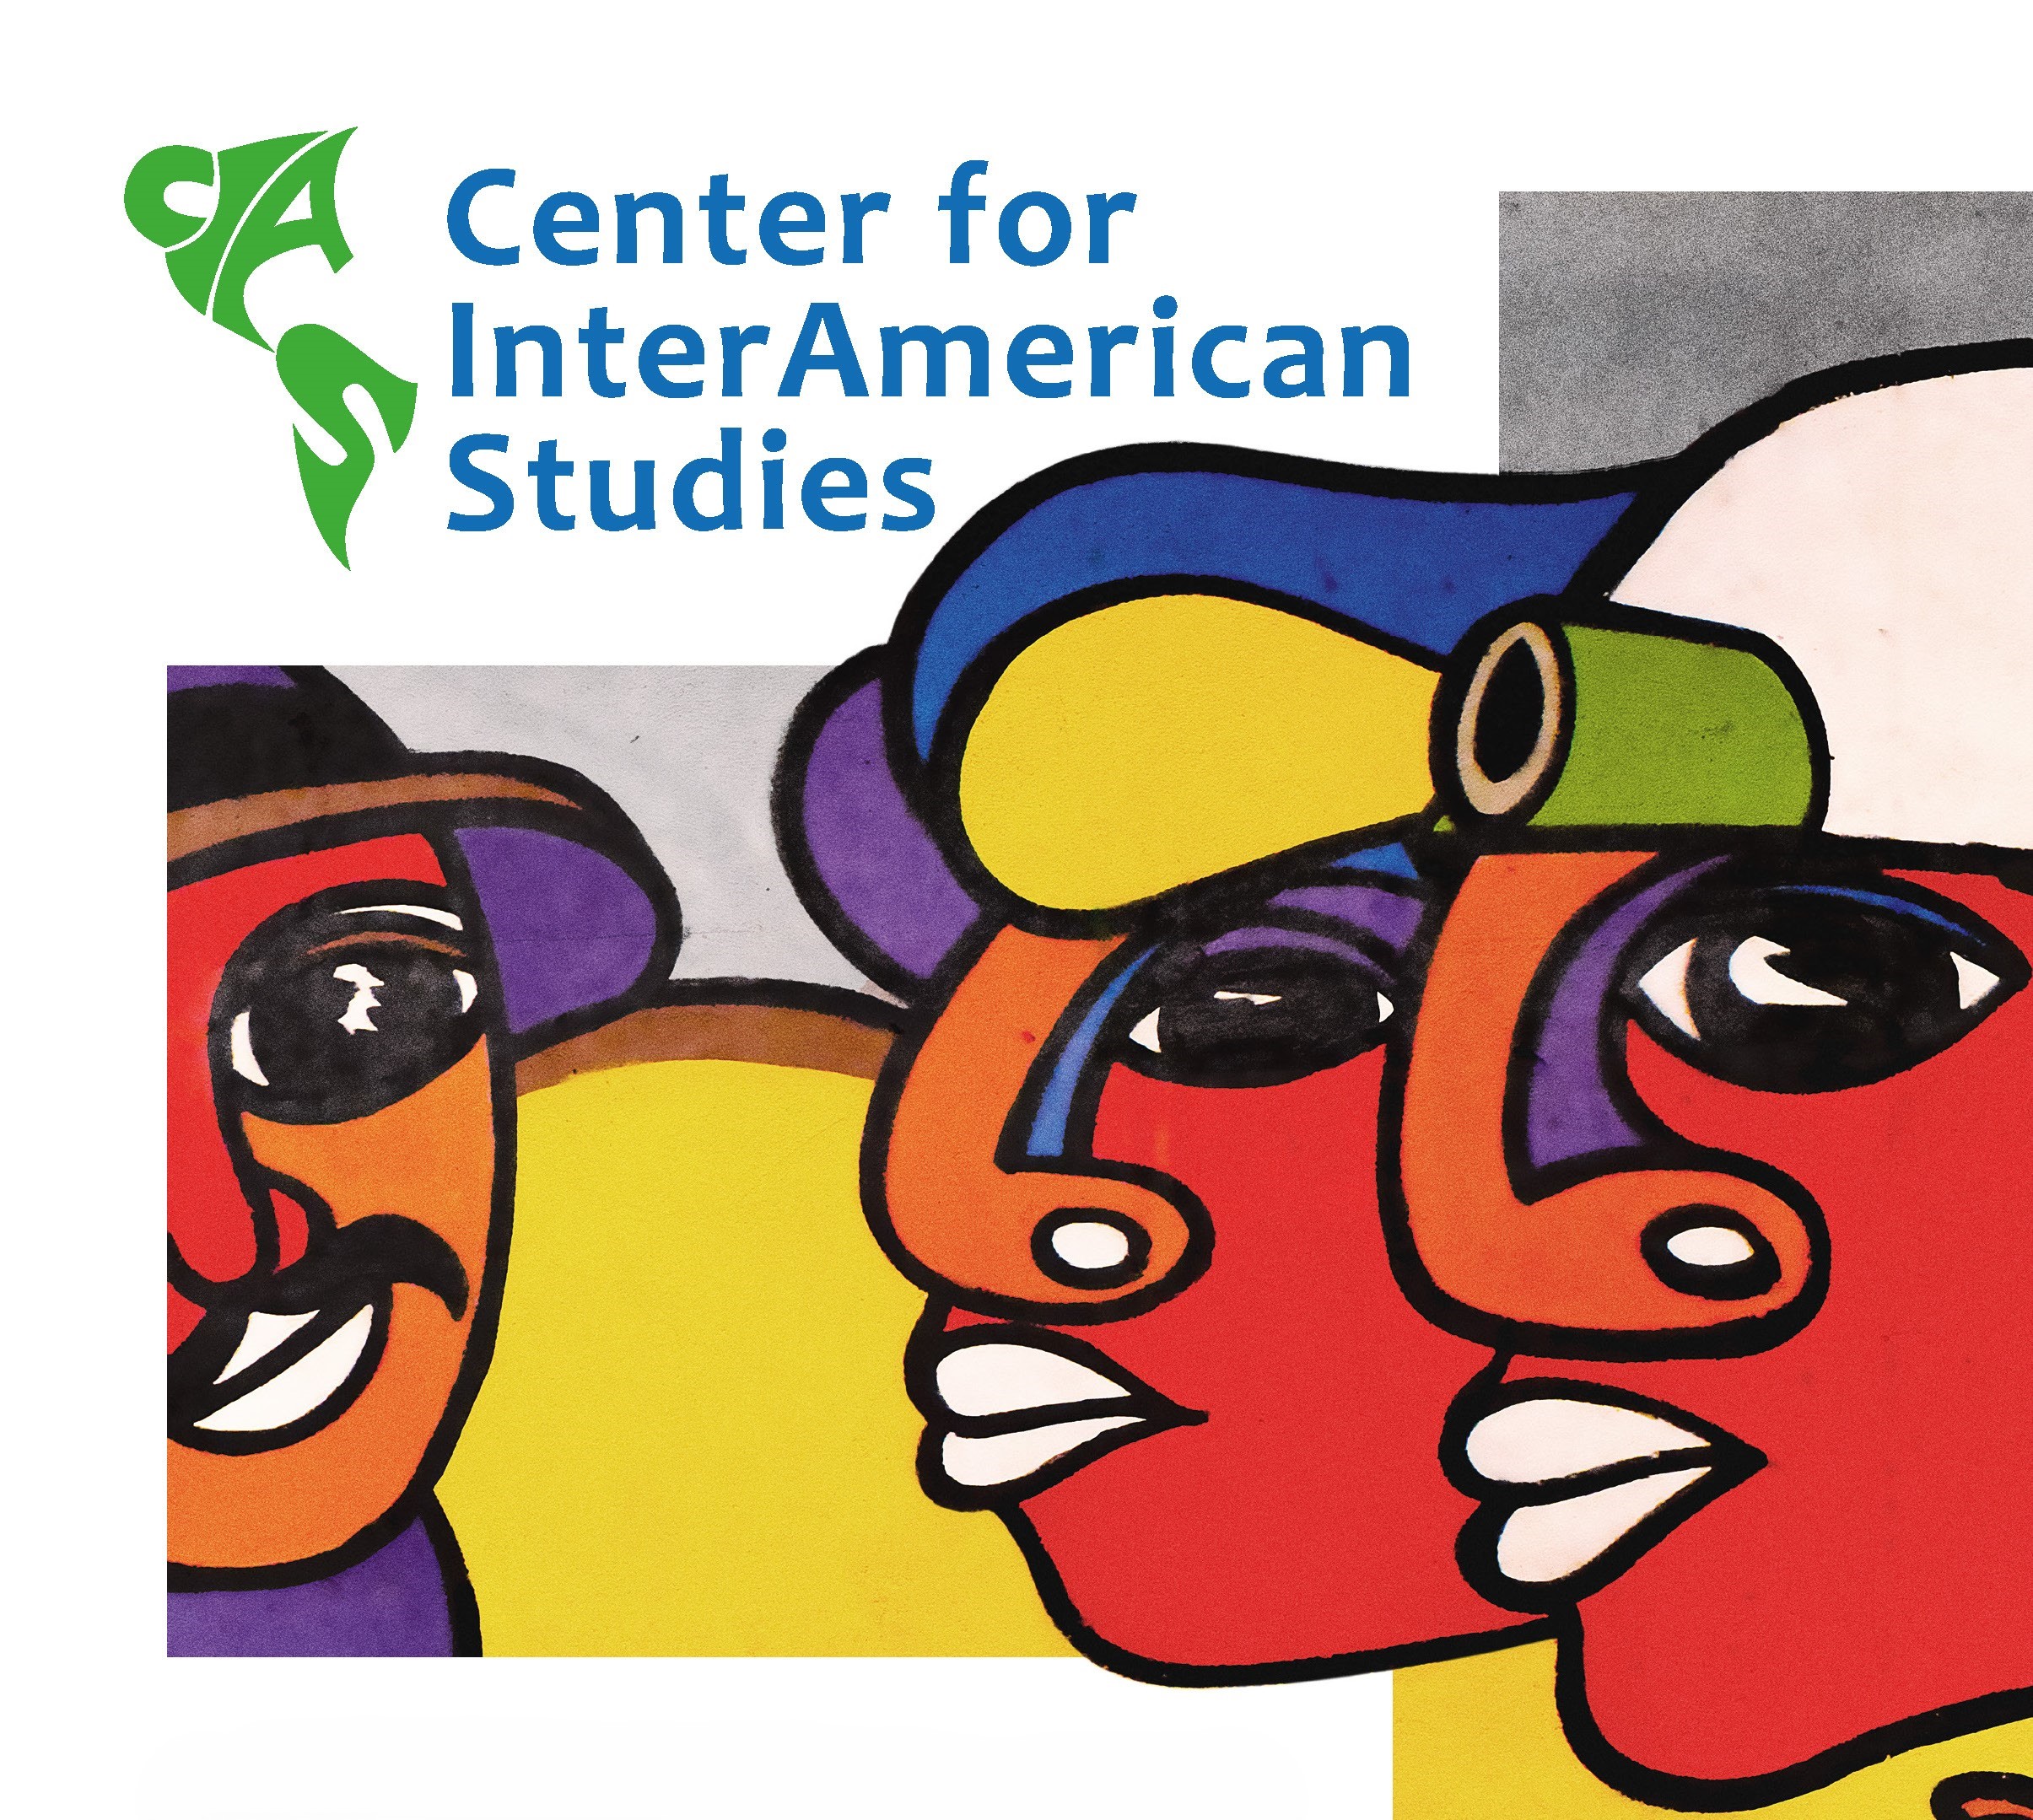 Jubiläumskarte des CIAS mit schematischer Darstellung derAmerikas und einem weißen Panoramabild der Uni auf grünem Hintergrund. Dadrunter verschiedene Poster vergangener Veranstaltungen